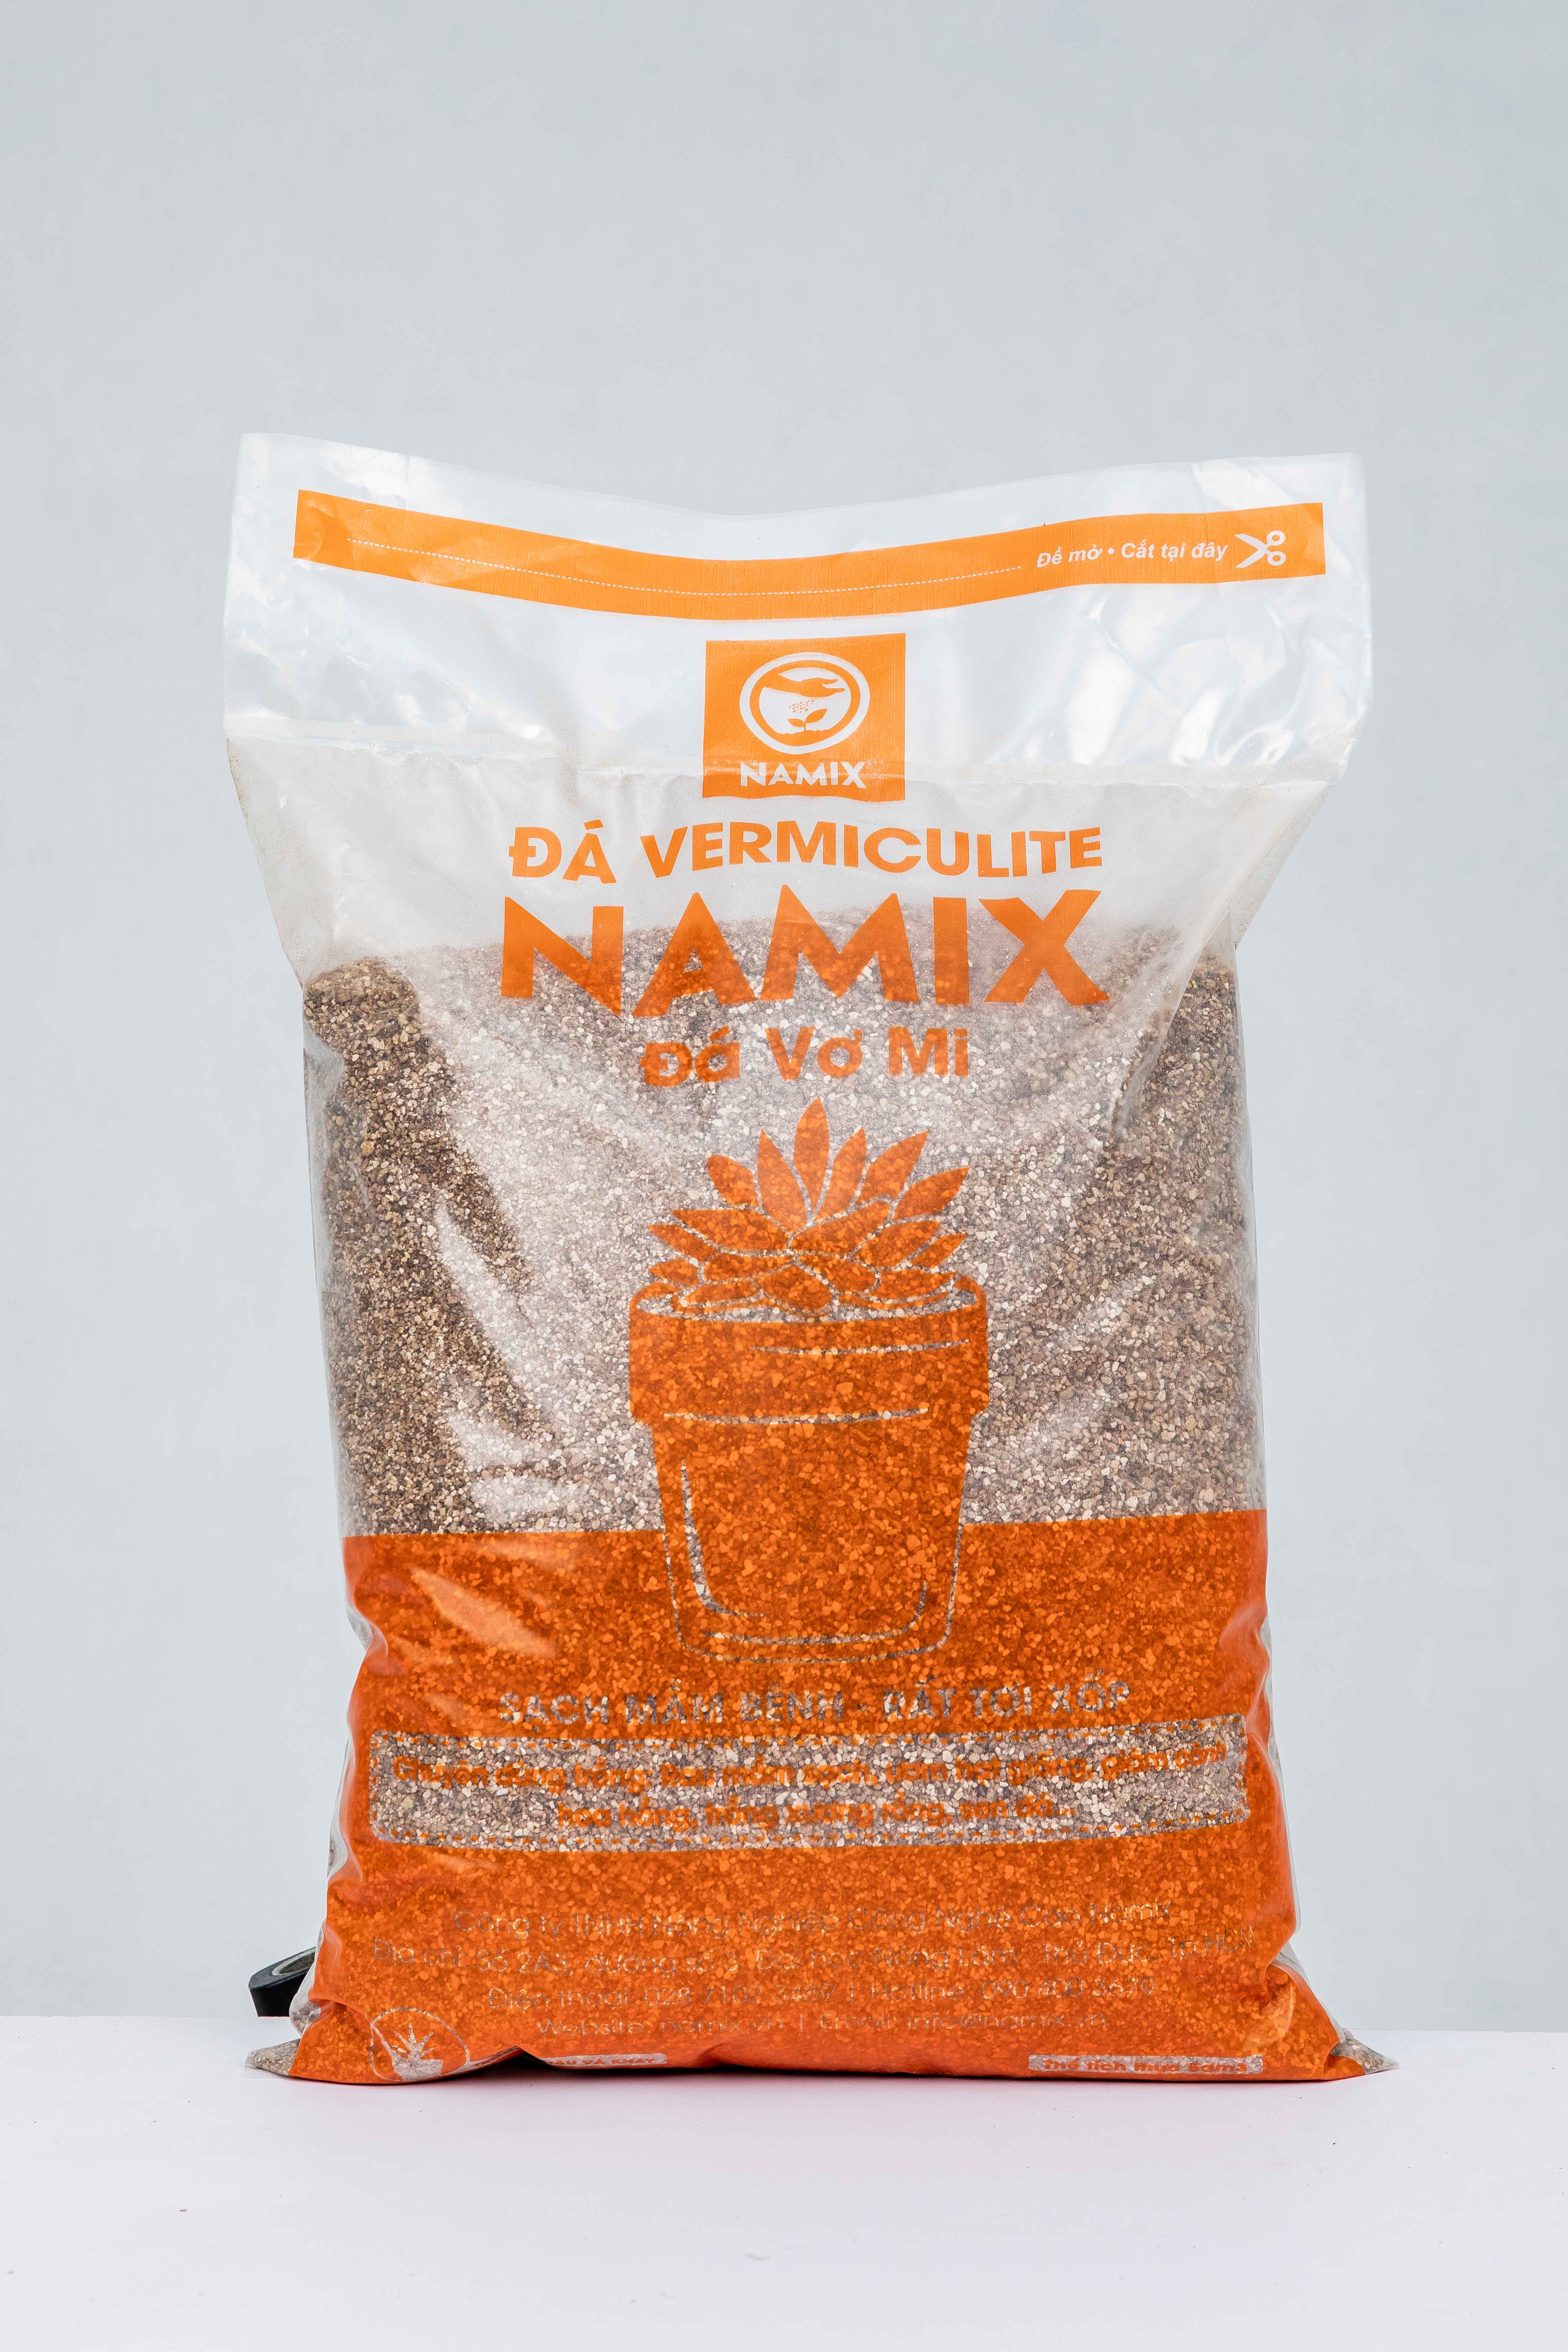 Đá Vermiculite - đá vơ mi Namix trồng xương rồng sen đá